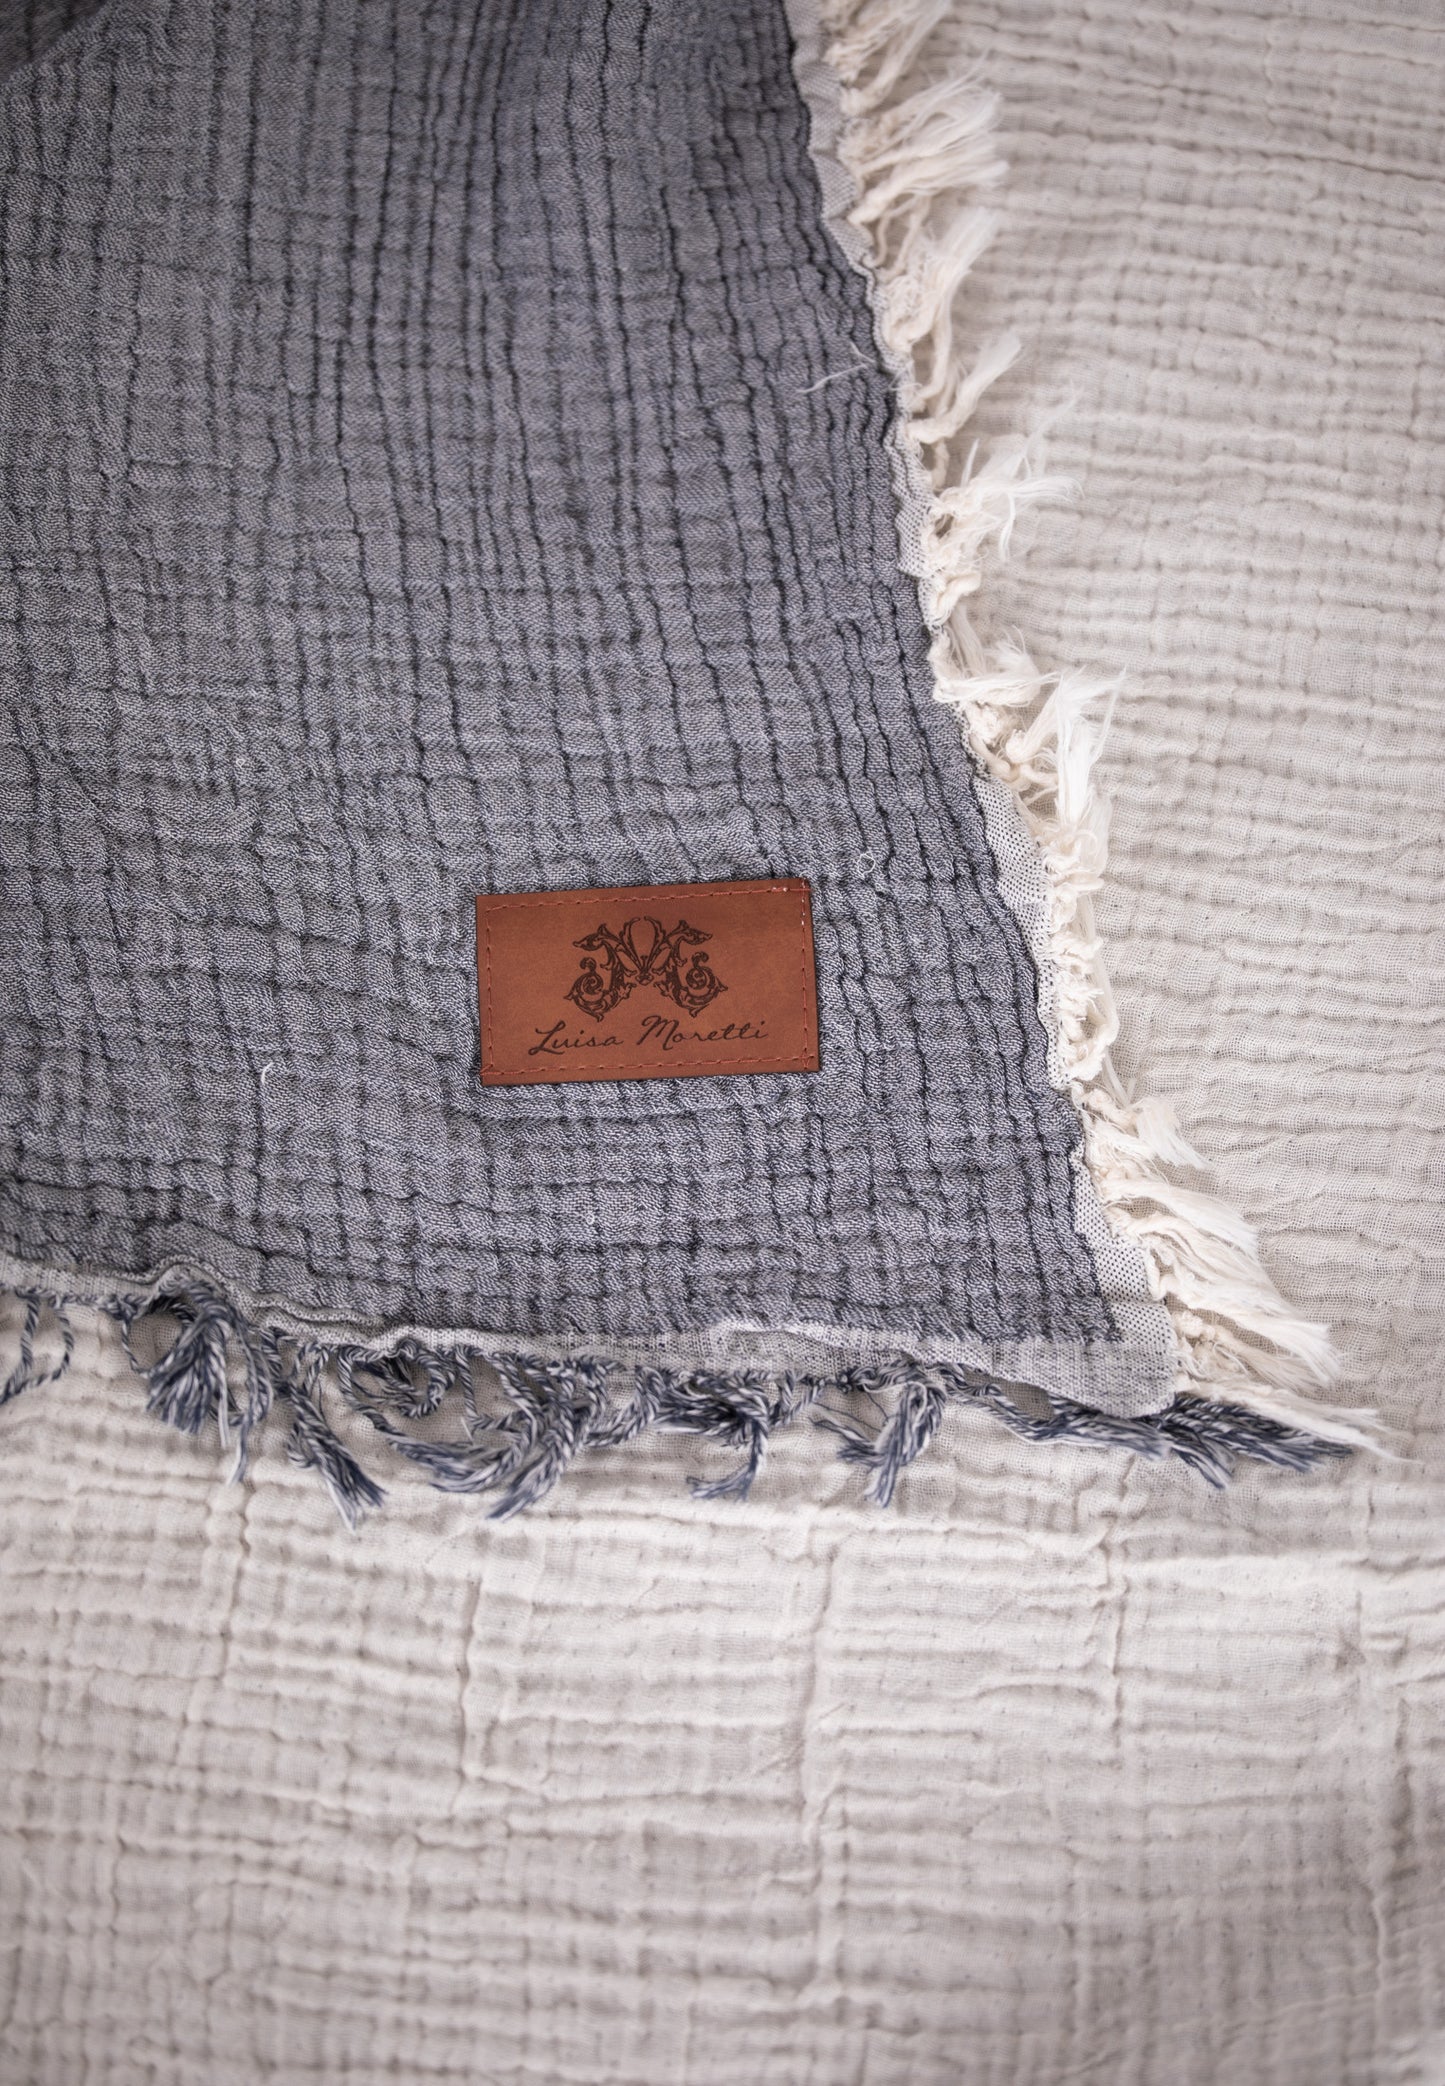 Premium Musselin Tagesdecke 240x260 cm - 100% Baumwolle - extraweiche Baumwolldecke als Kuscheldecke, Bett-Überwurf, Sofa-Überwurf, Couch-Überwurf - warme Sofa-Decke LMS-6481 (Anthrazit)